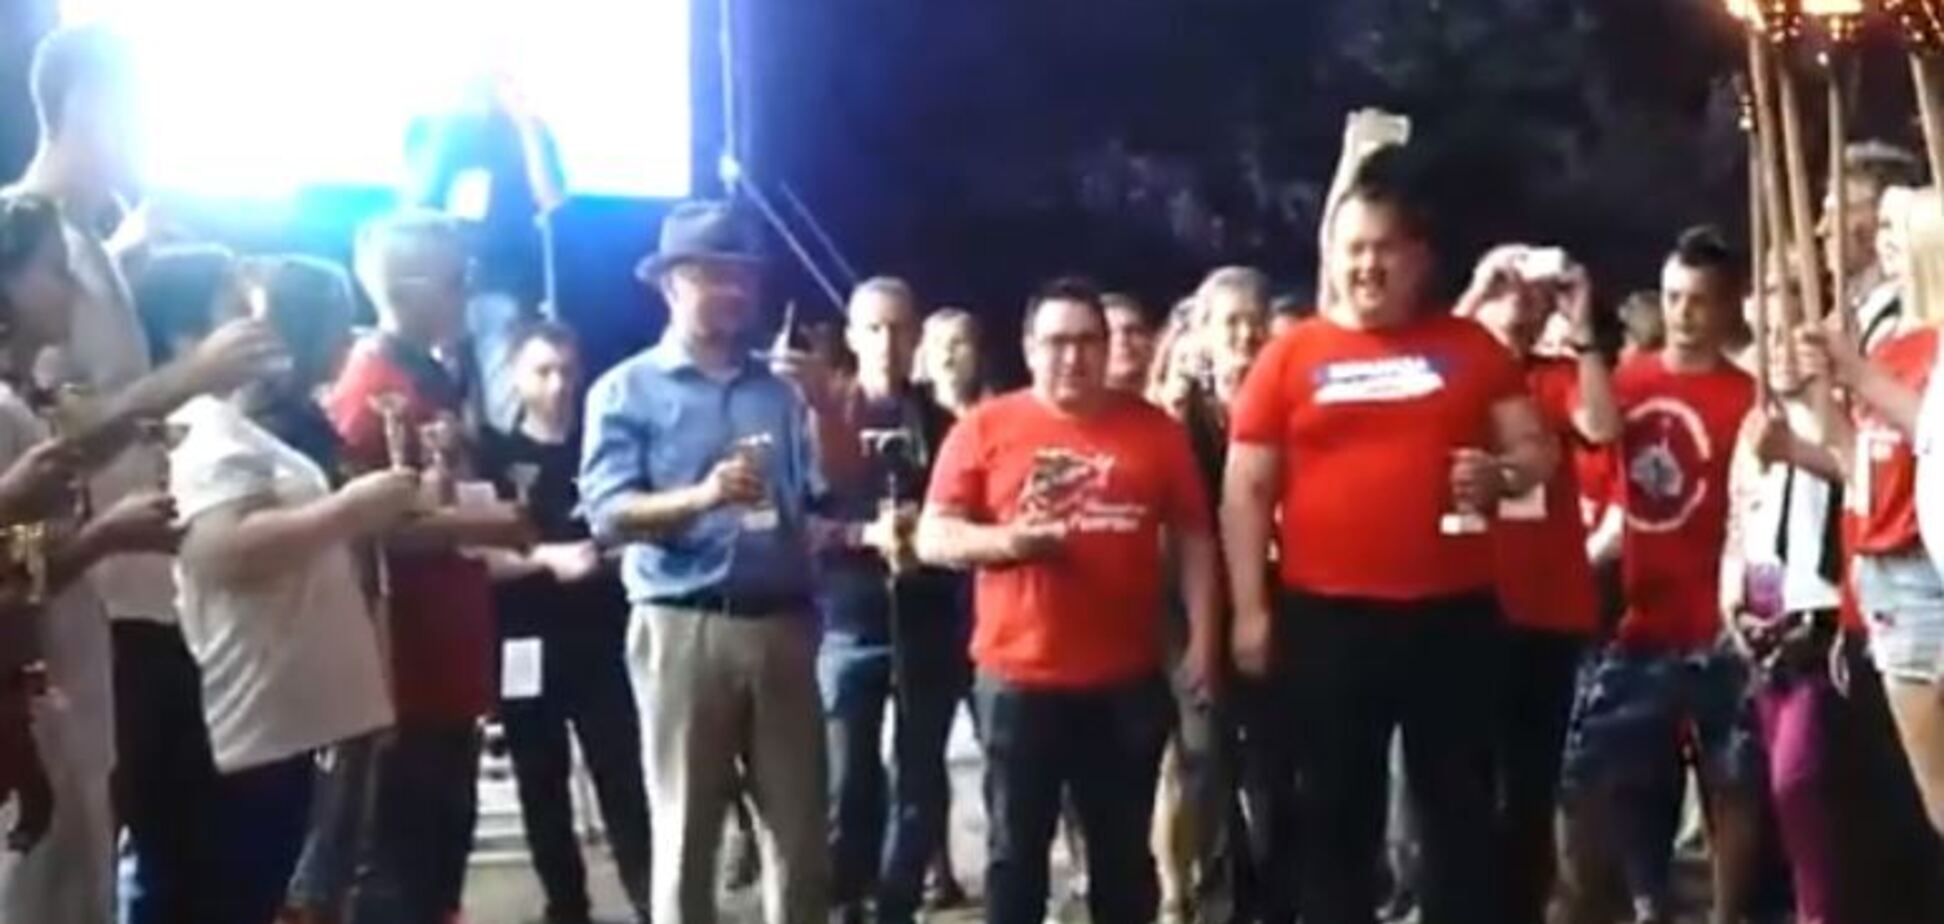 'Сборище слабоумных!' В сеть попало видео клятвы детей главарю 'ДНР'